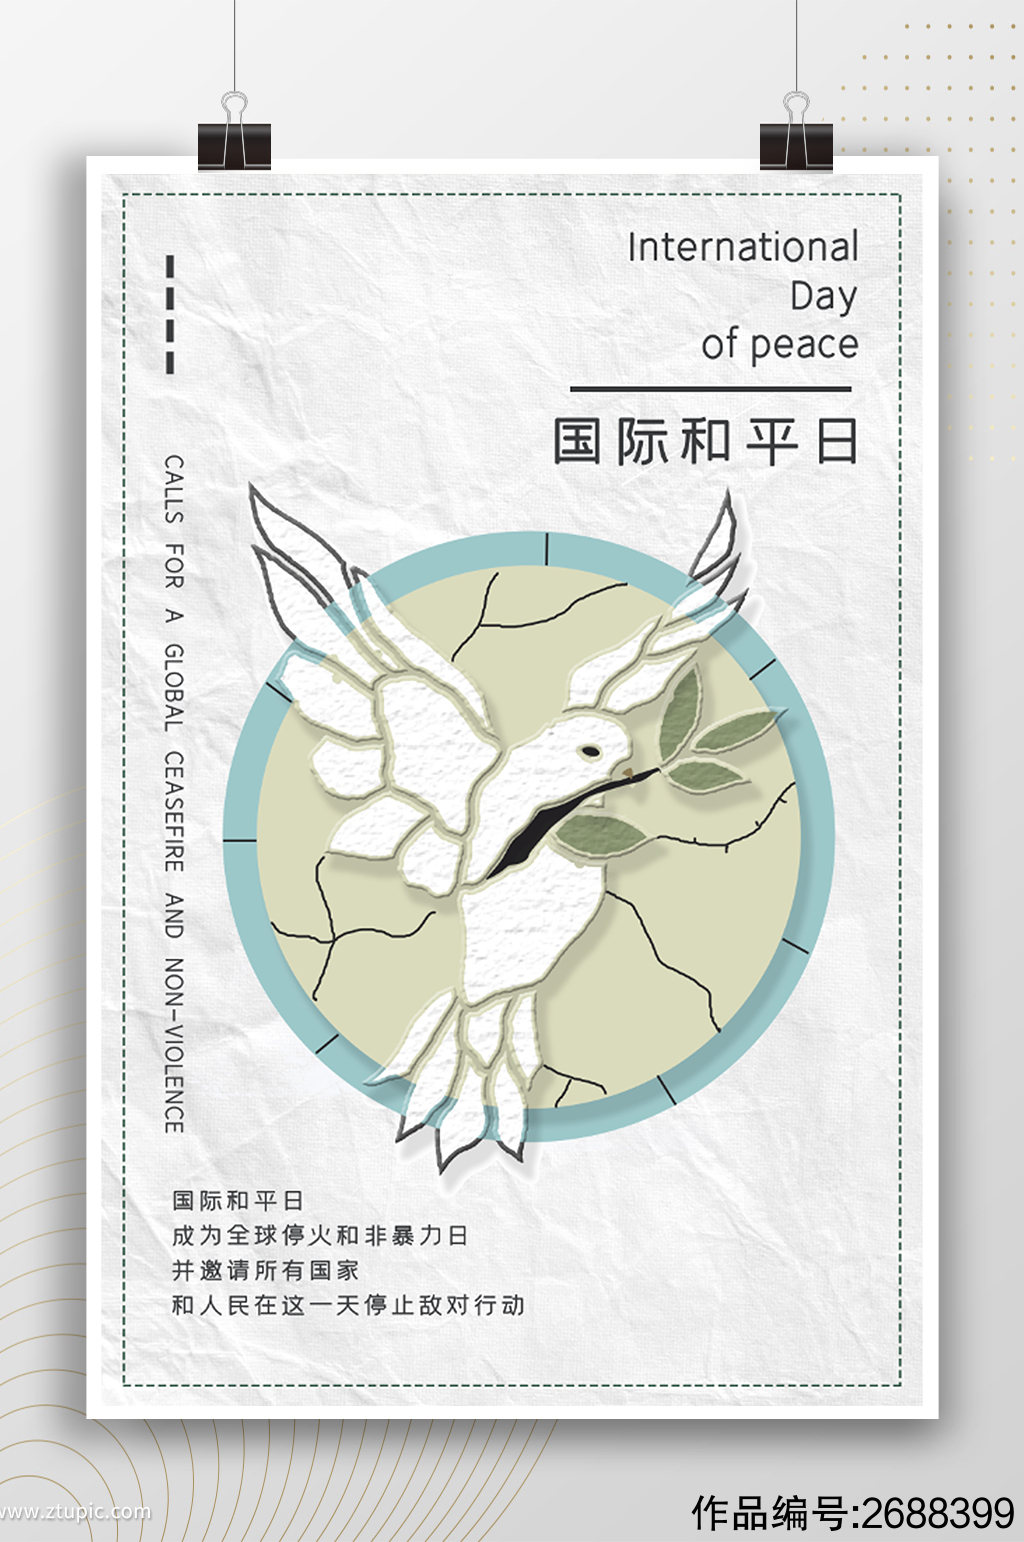 创意白鸽国际和平日公益海报素材